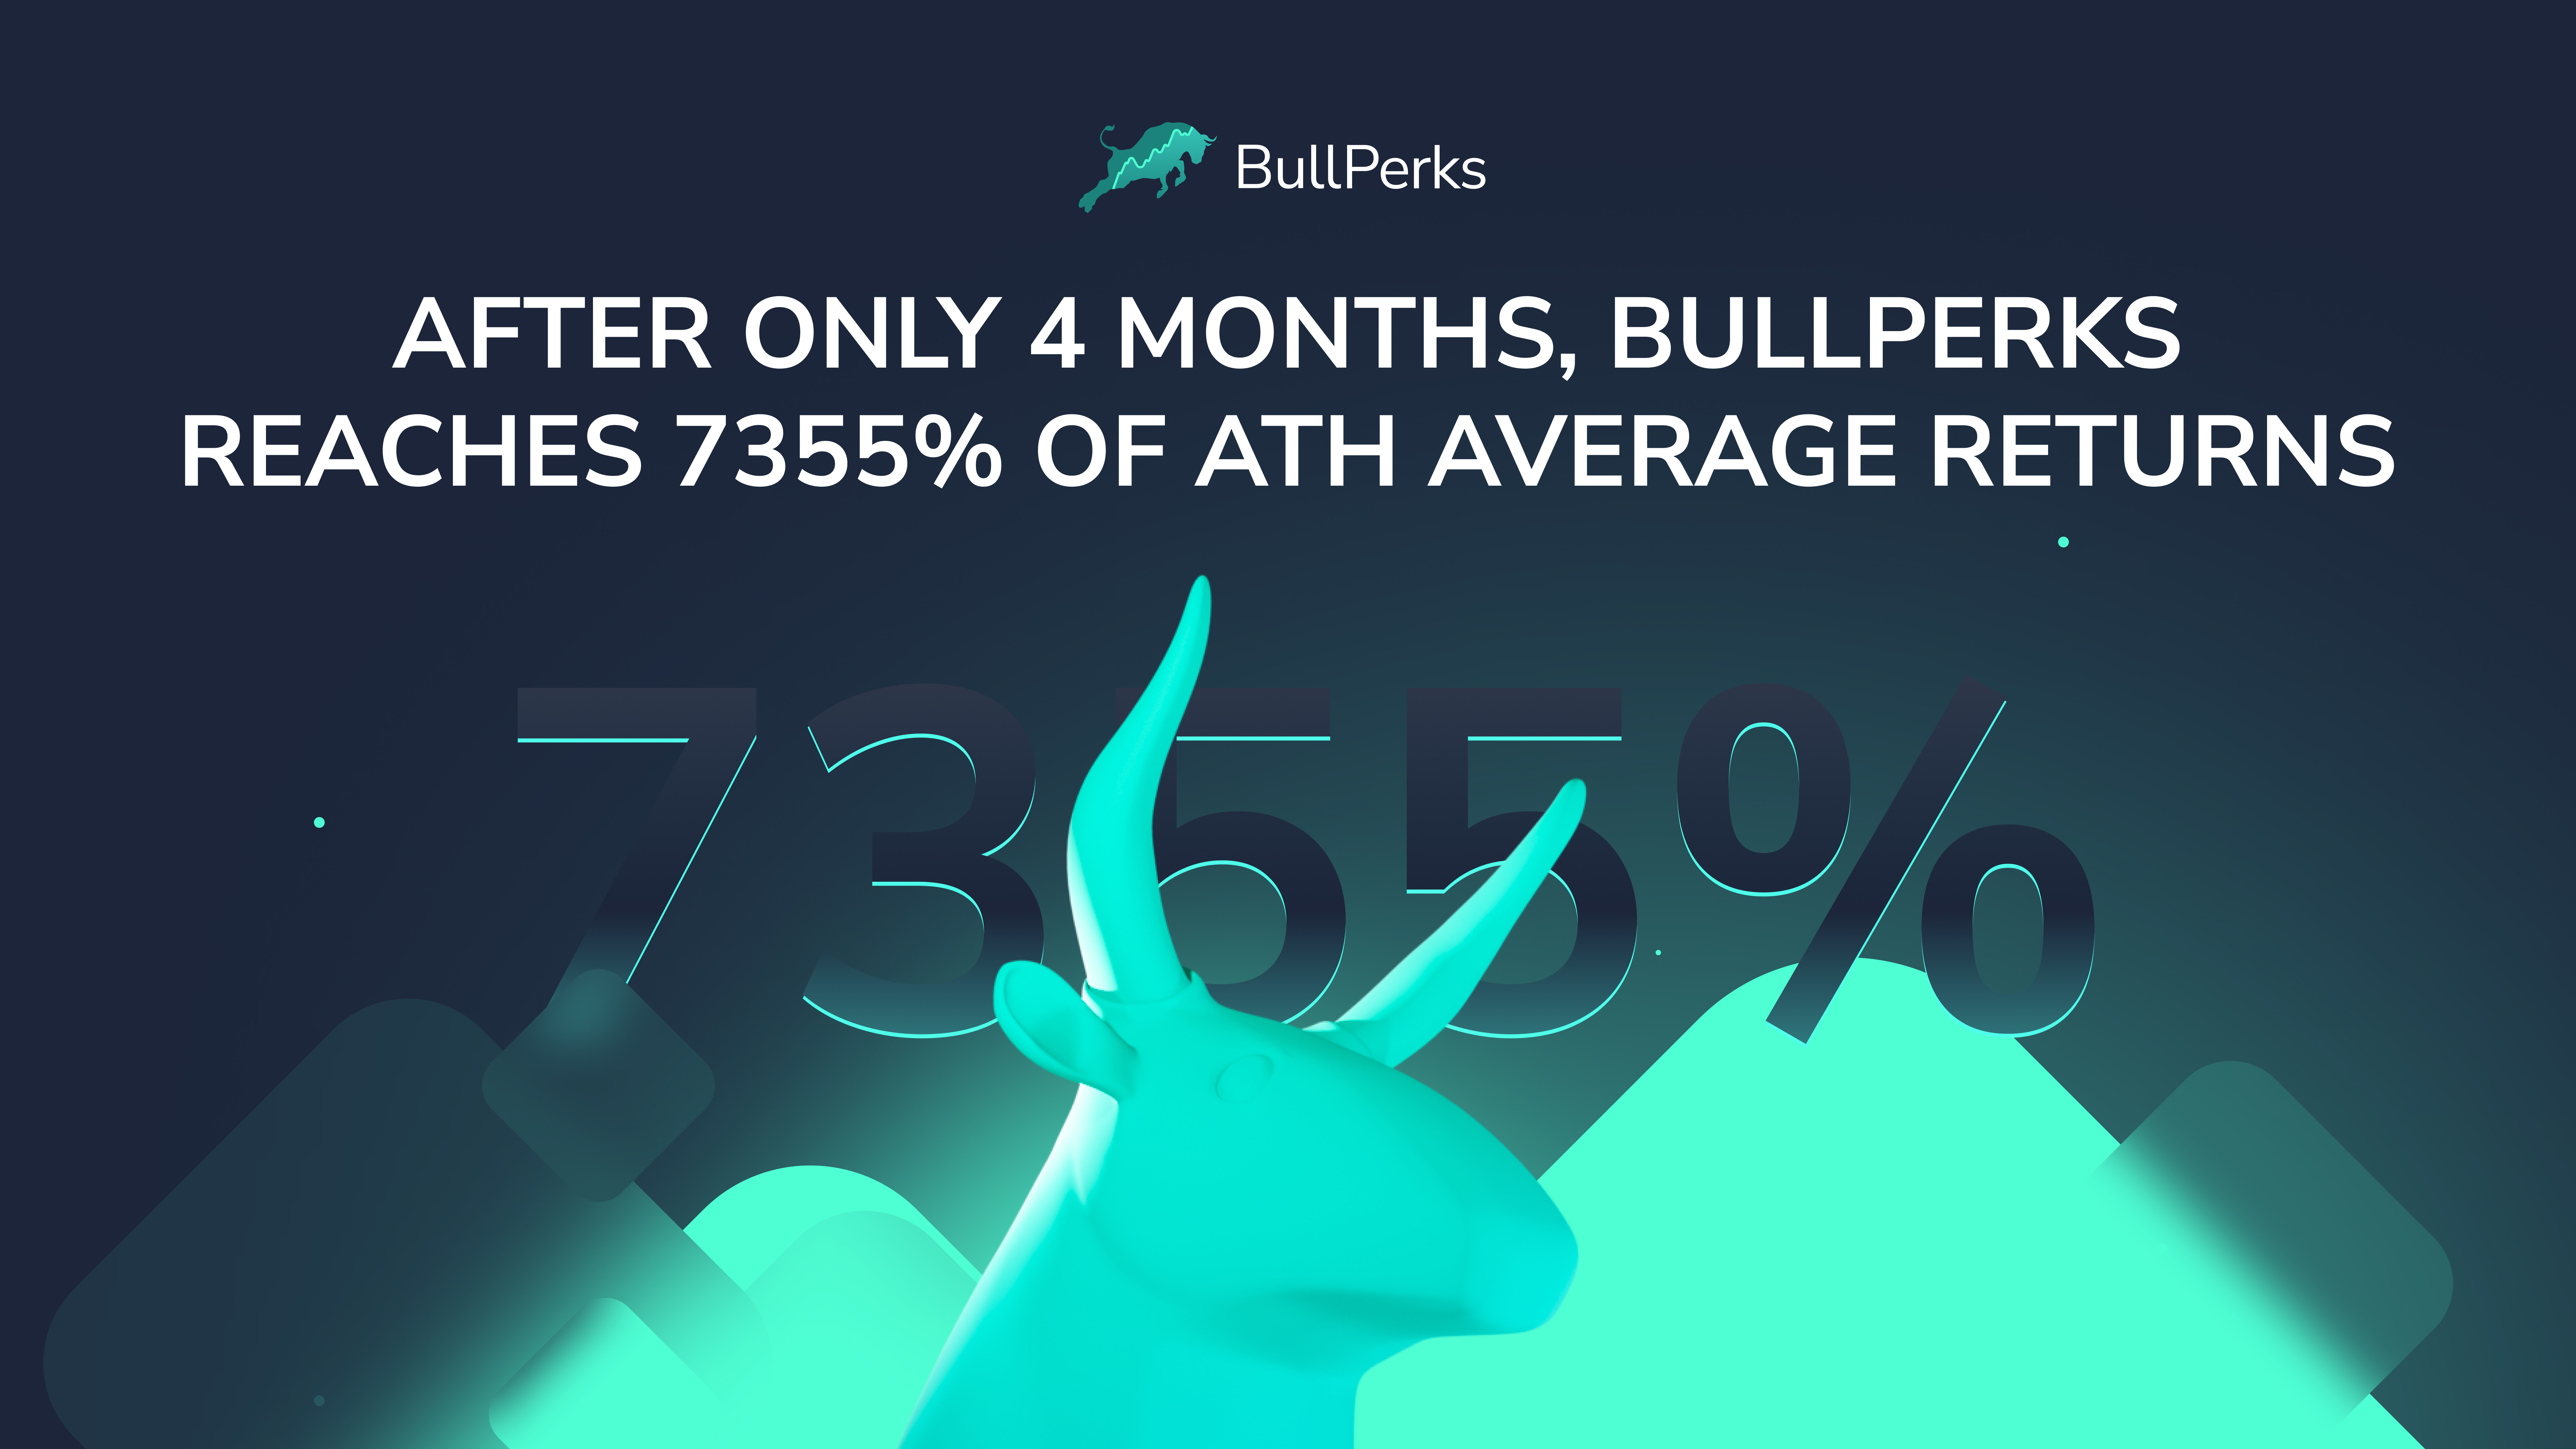 BullPerks, Thursday, November 4, 2021, Press release picture